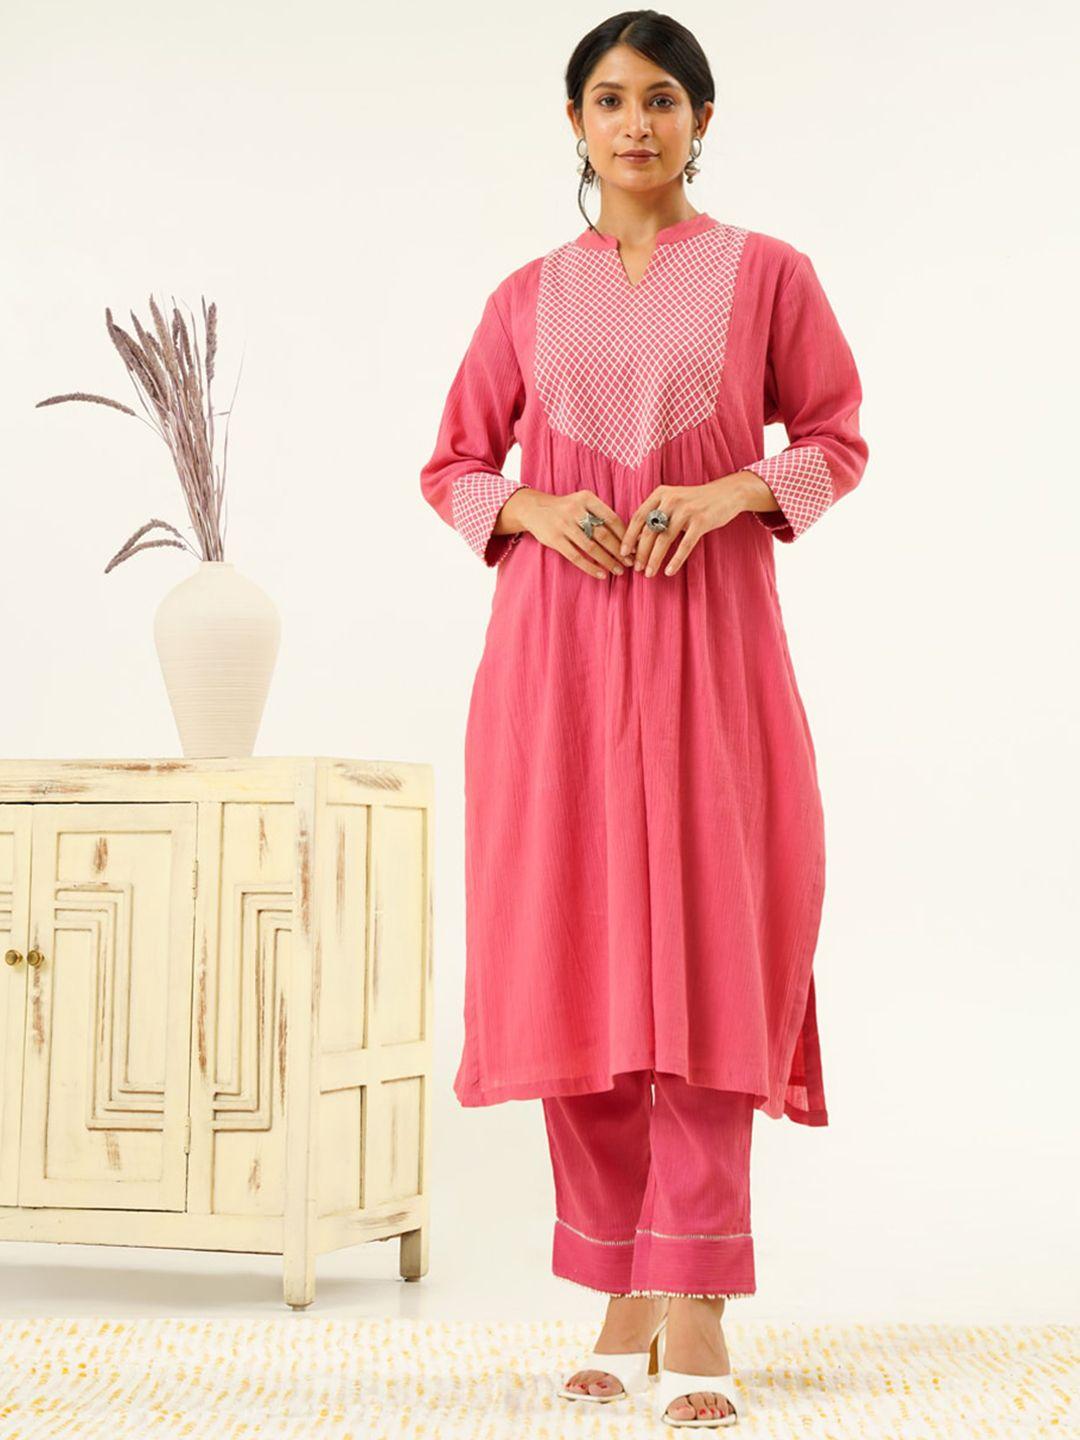 indy raaga yoke design mandarin collar pure cotton regular kurta with pyjamas